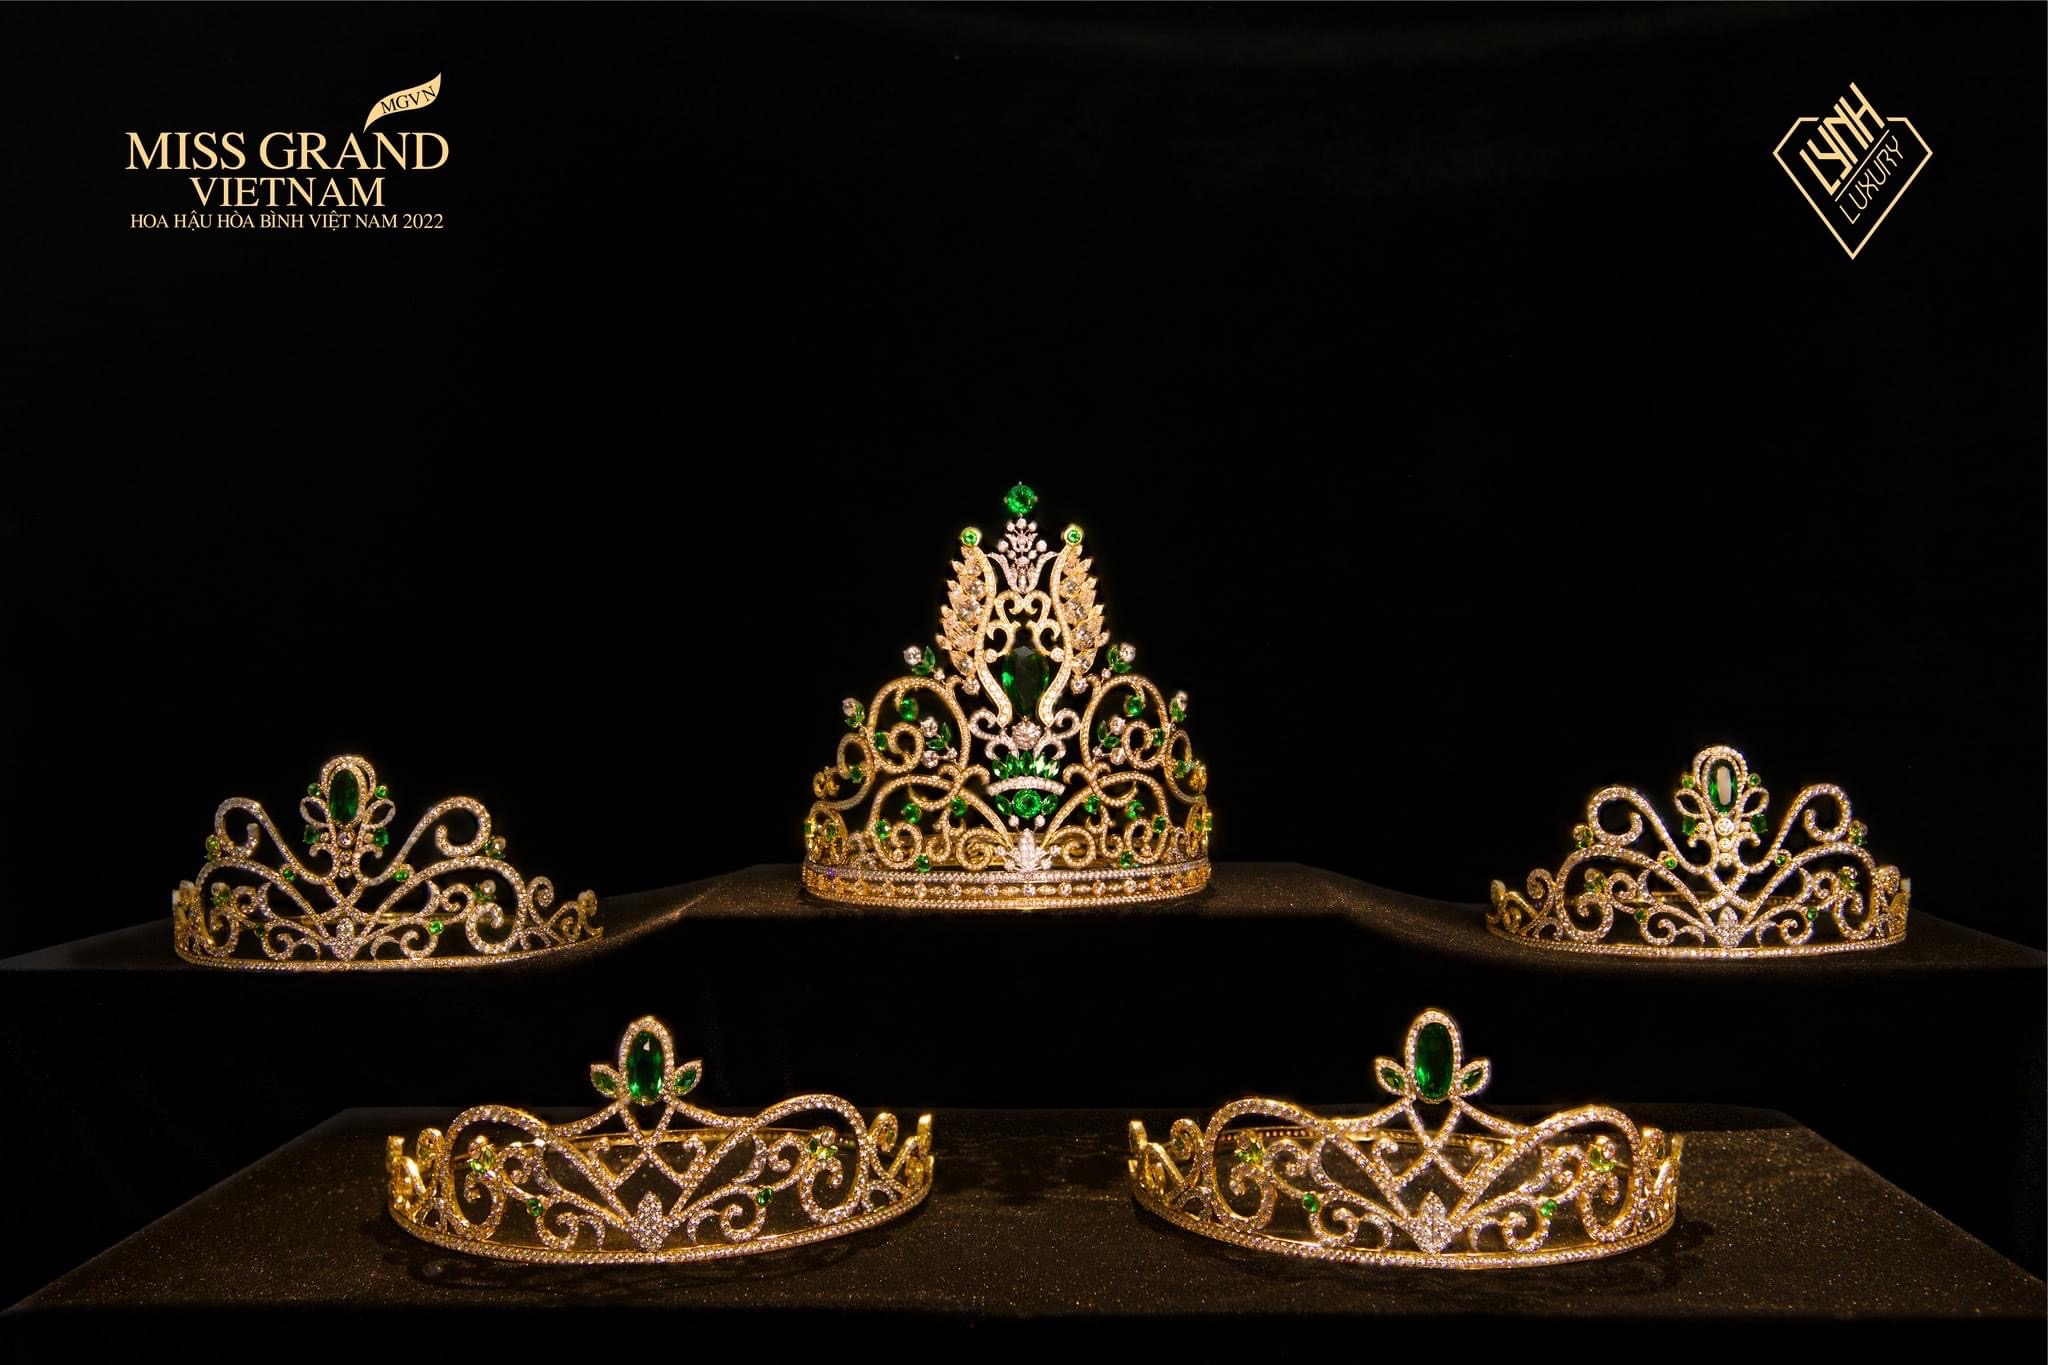 Theo dõi buổi lễ đăng quang của hoa hậu quốc gia và chiêm ngưỡng vẻ đẹp của vương miện hoa hậu được chế tác tỉ mỉ và lộng lẫy trên đầu người đẹp.